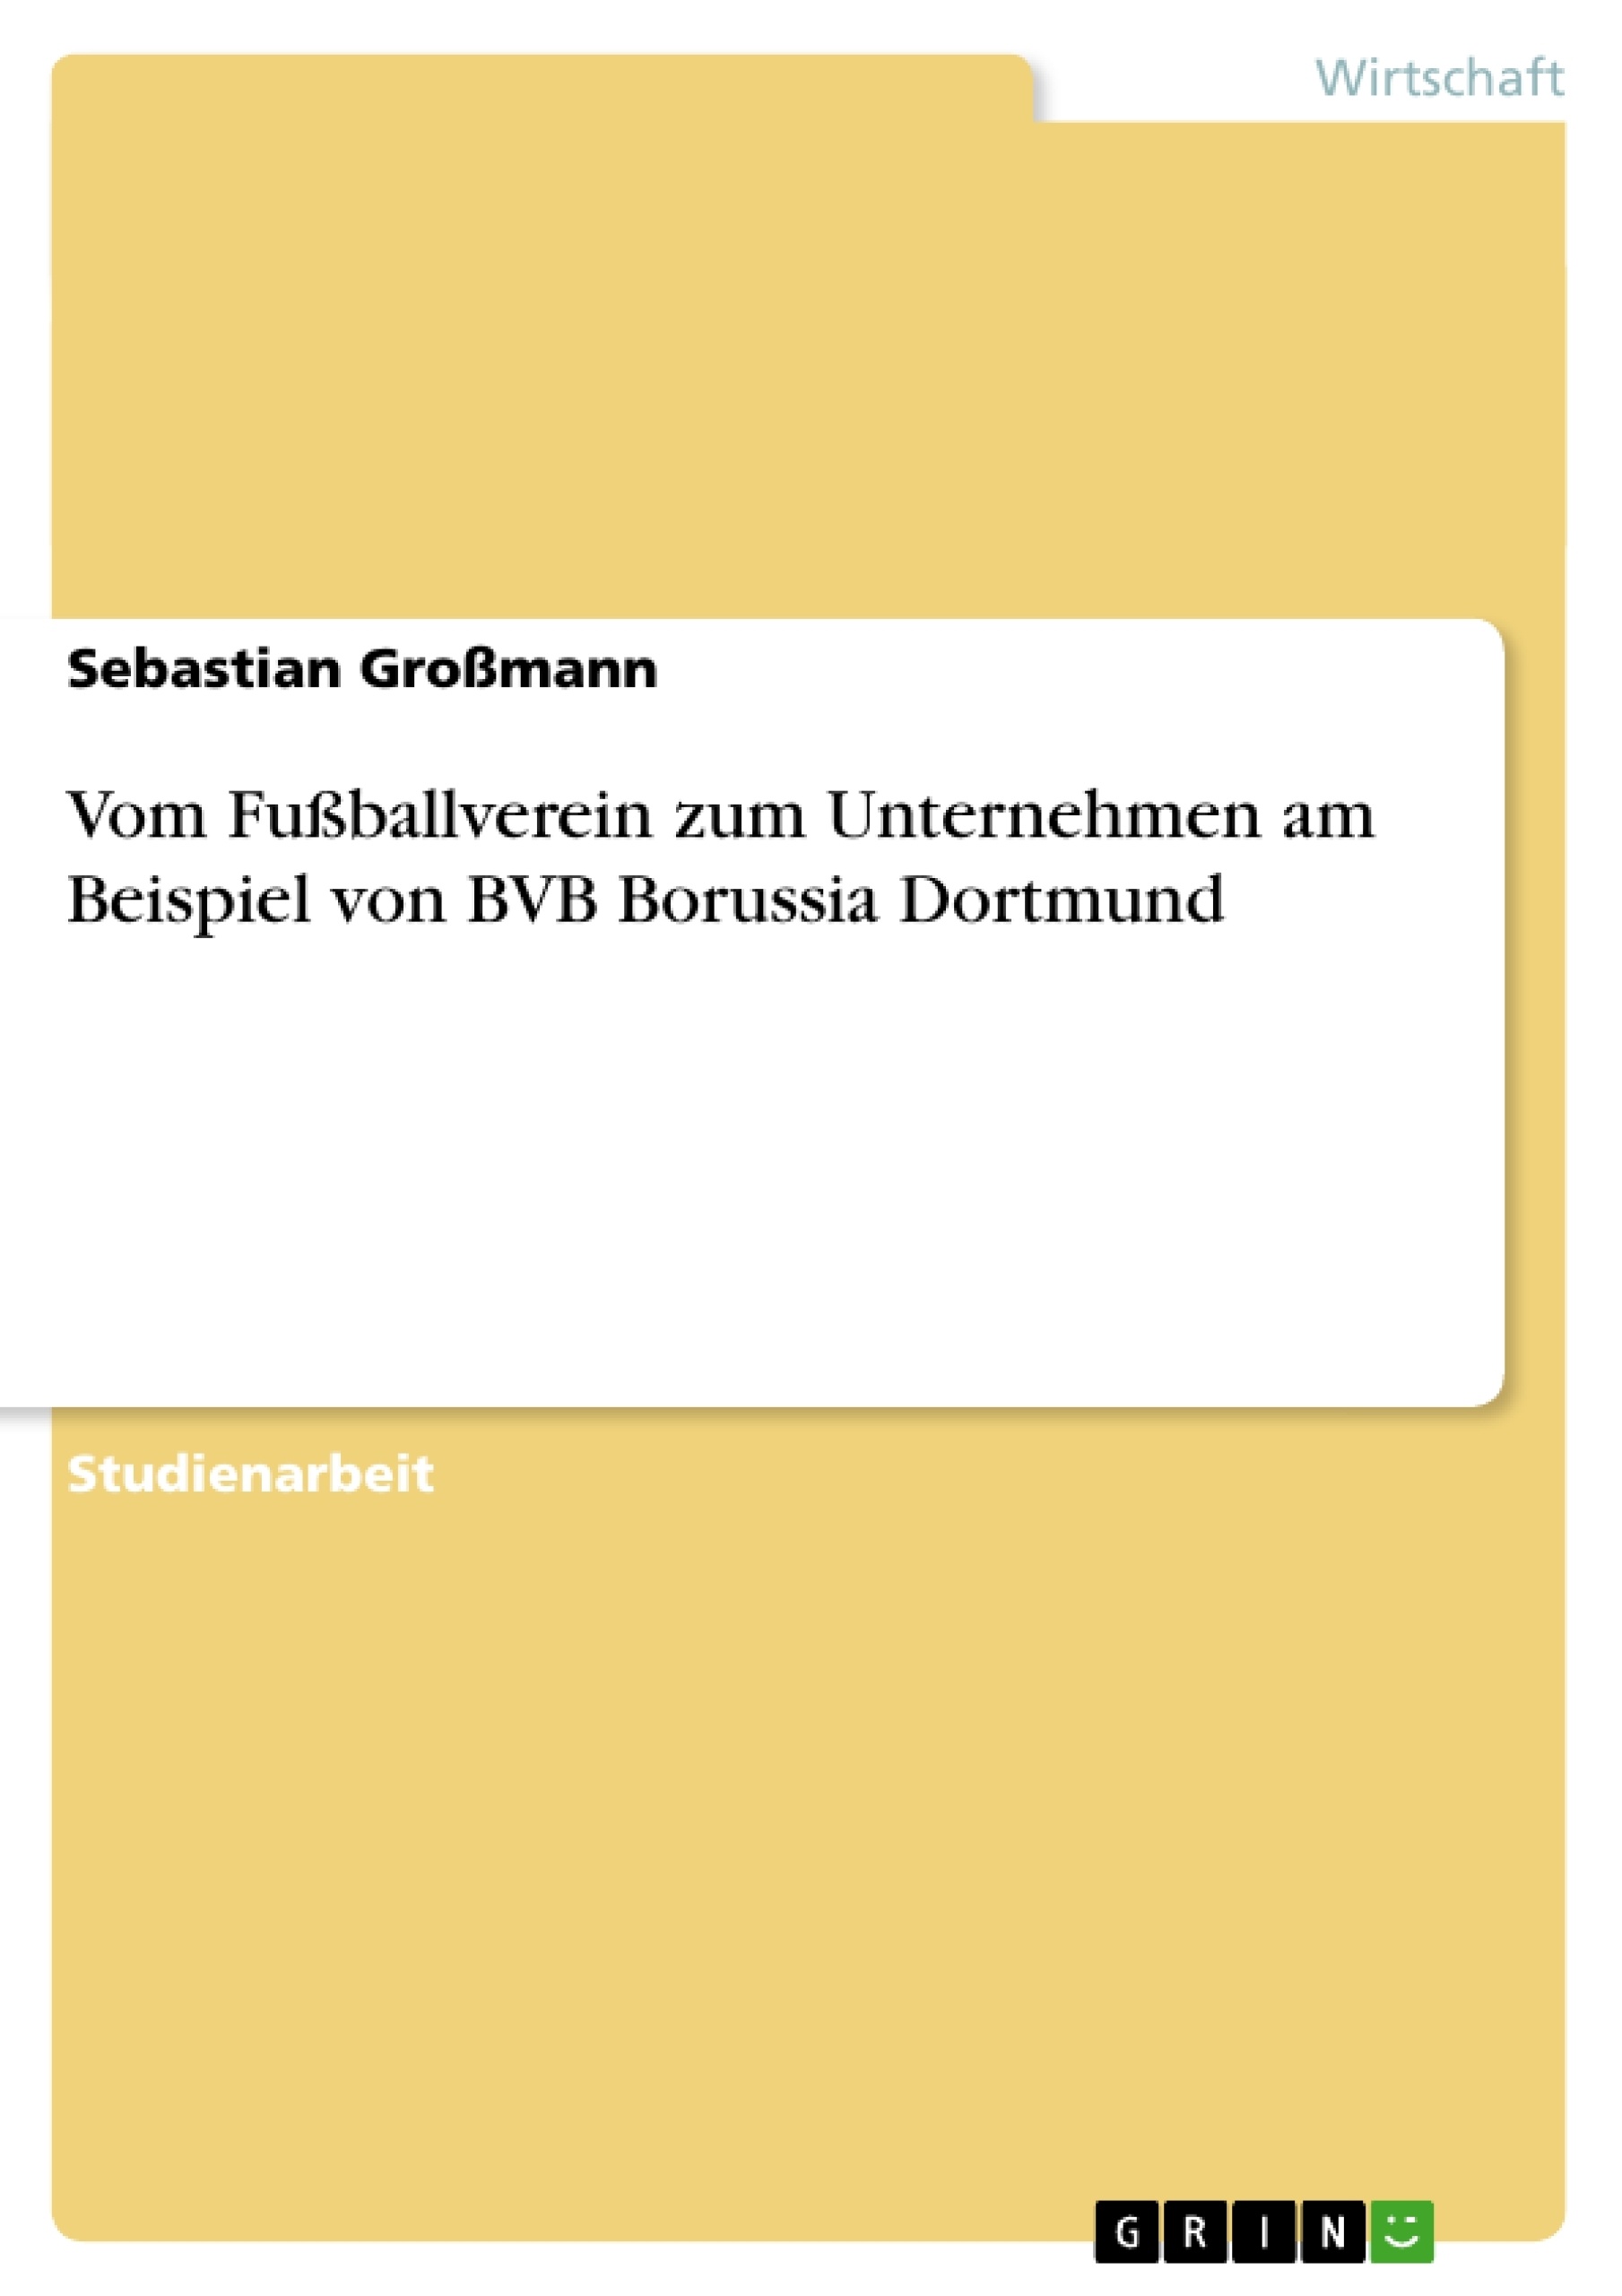 Título: Vom Fußballverein zum Unternehmen am Beispiel von BVB Borussia Dortmund